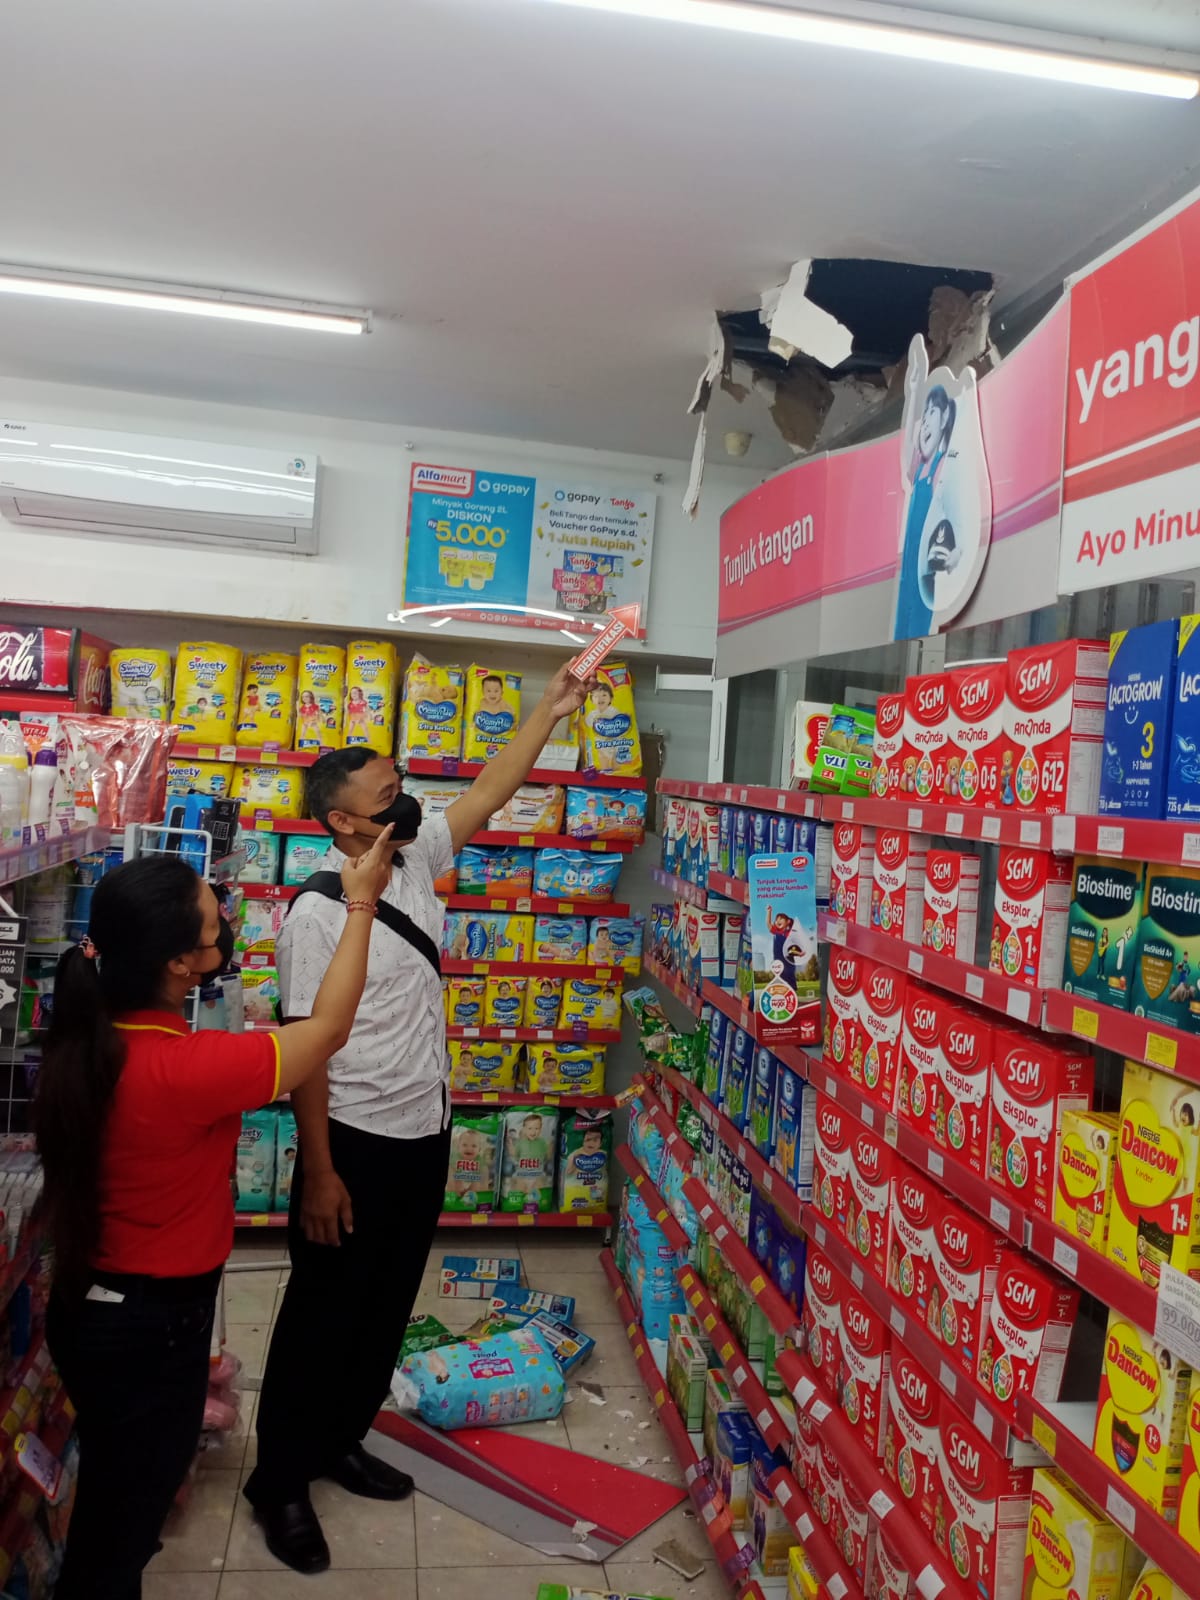 Toko Alfamart Jalan Raya Saba, Blahbatuh Digondol Maling